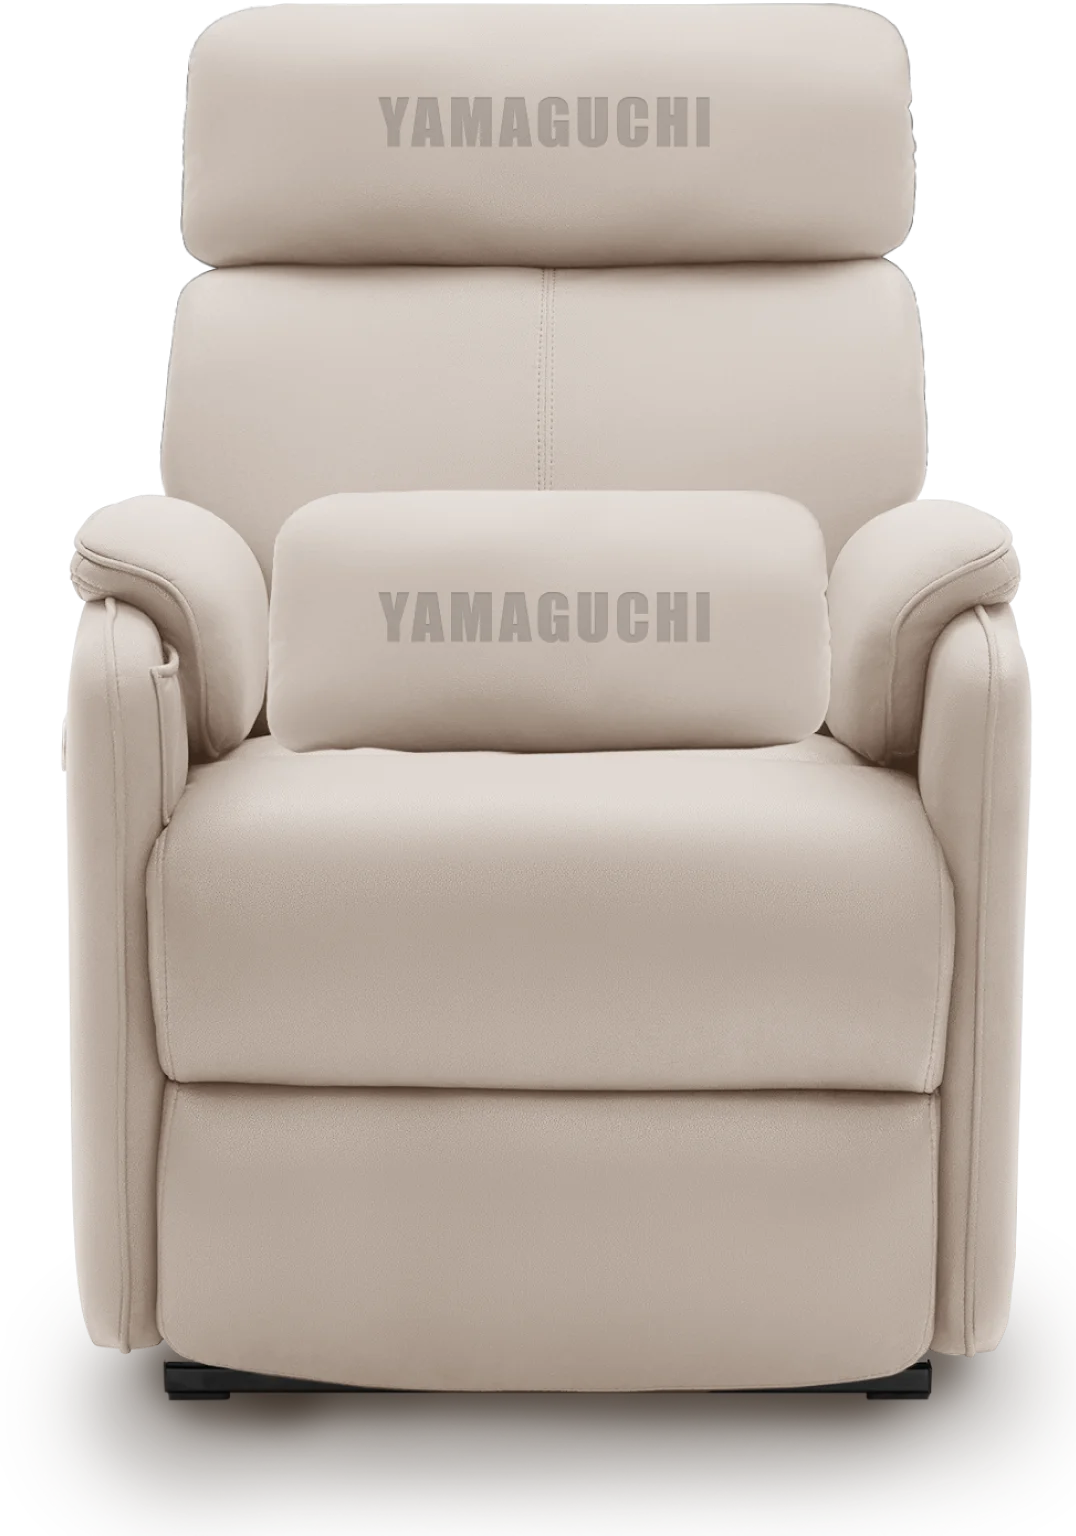 Yamaguchi sofa